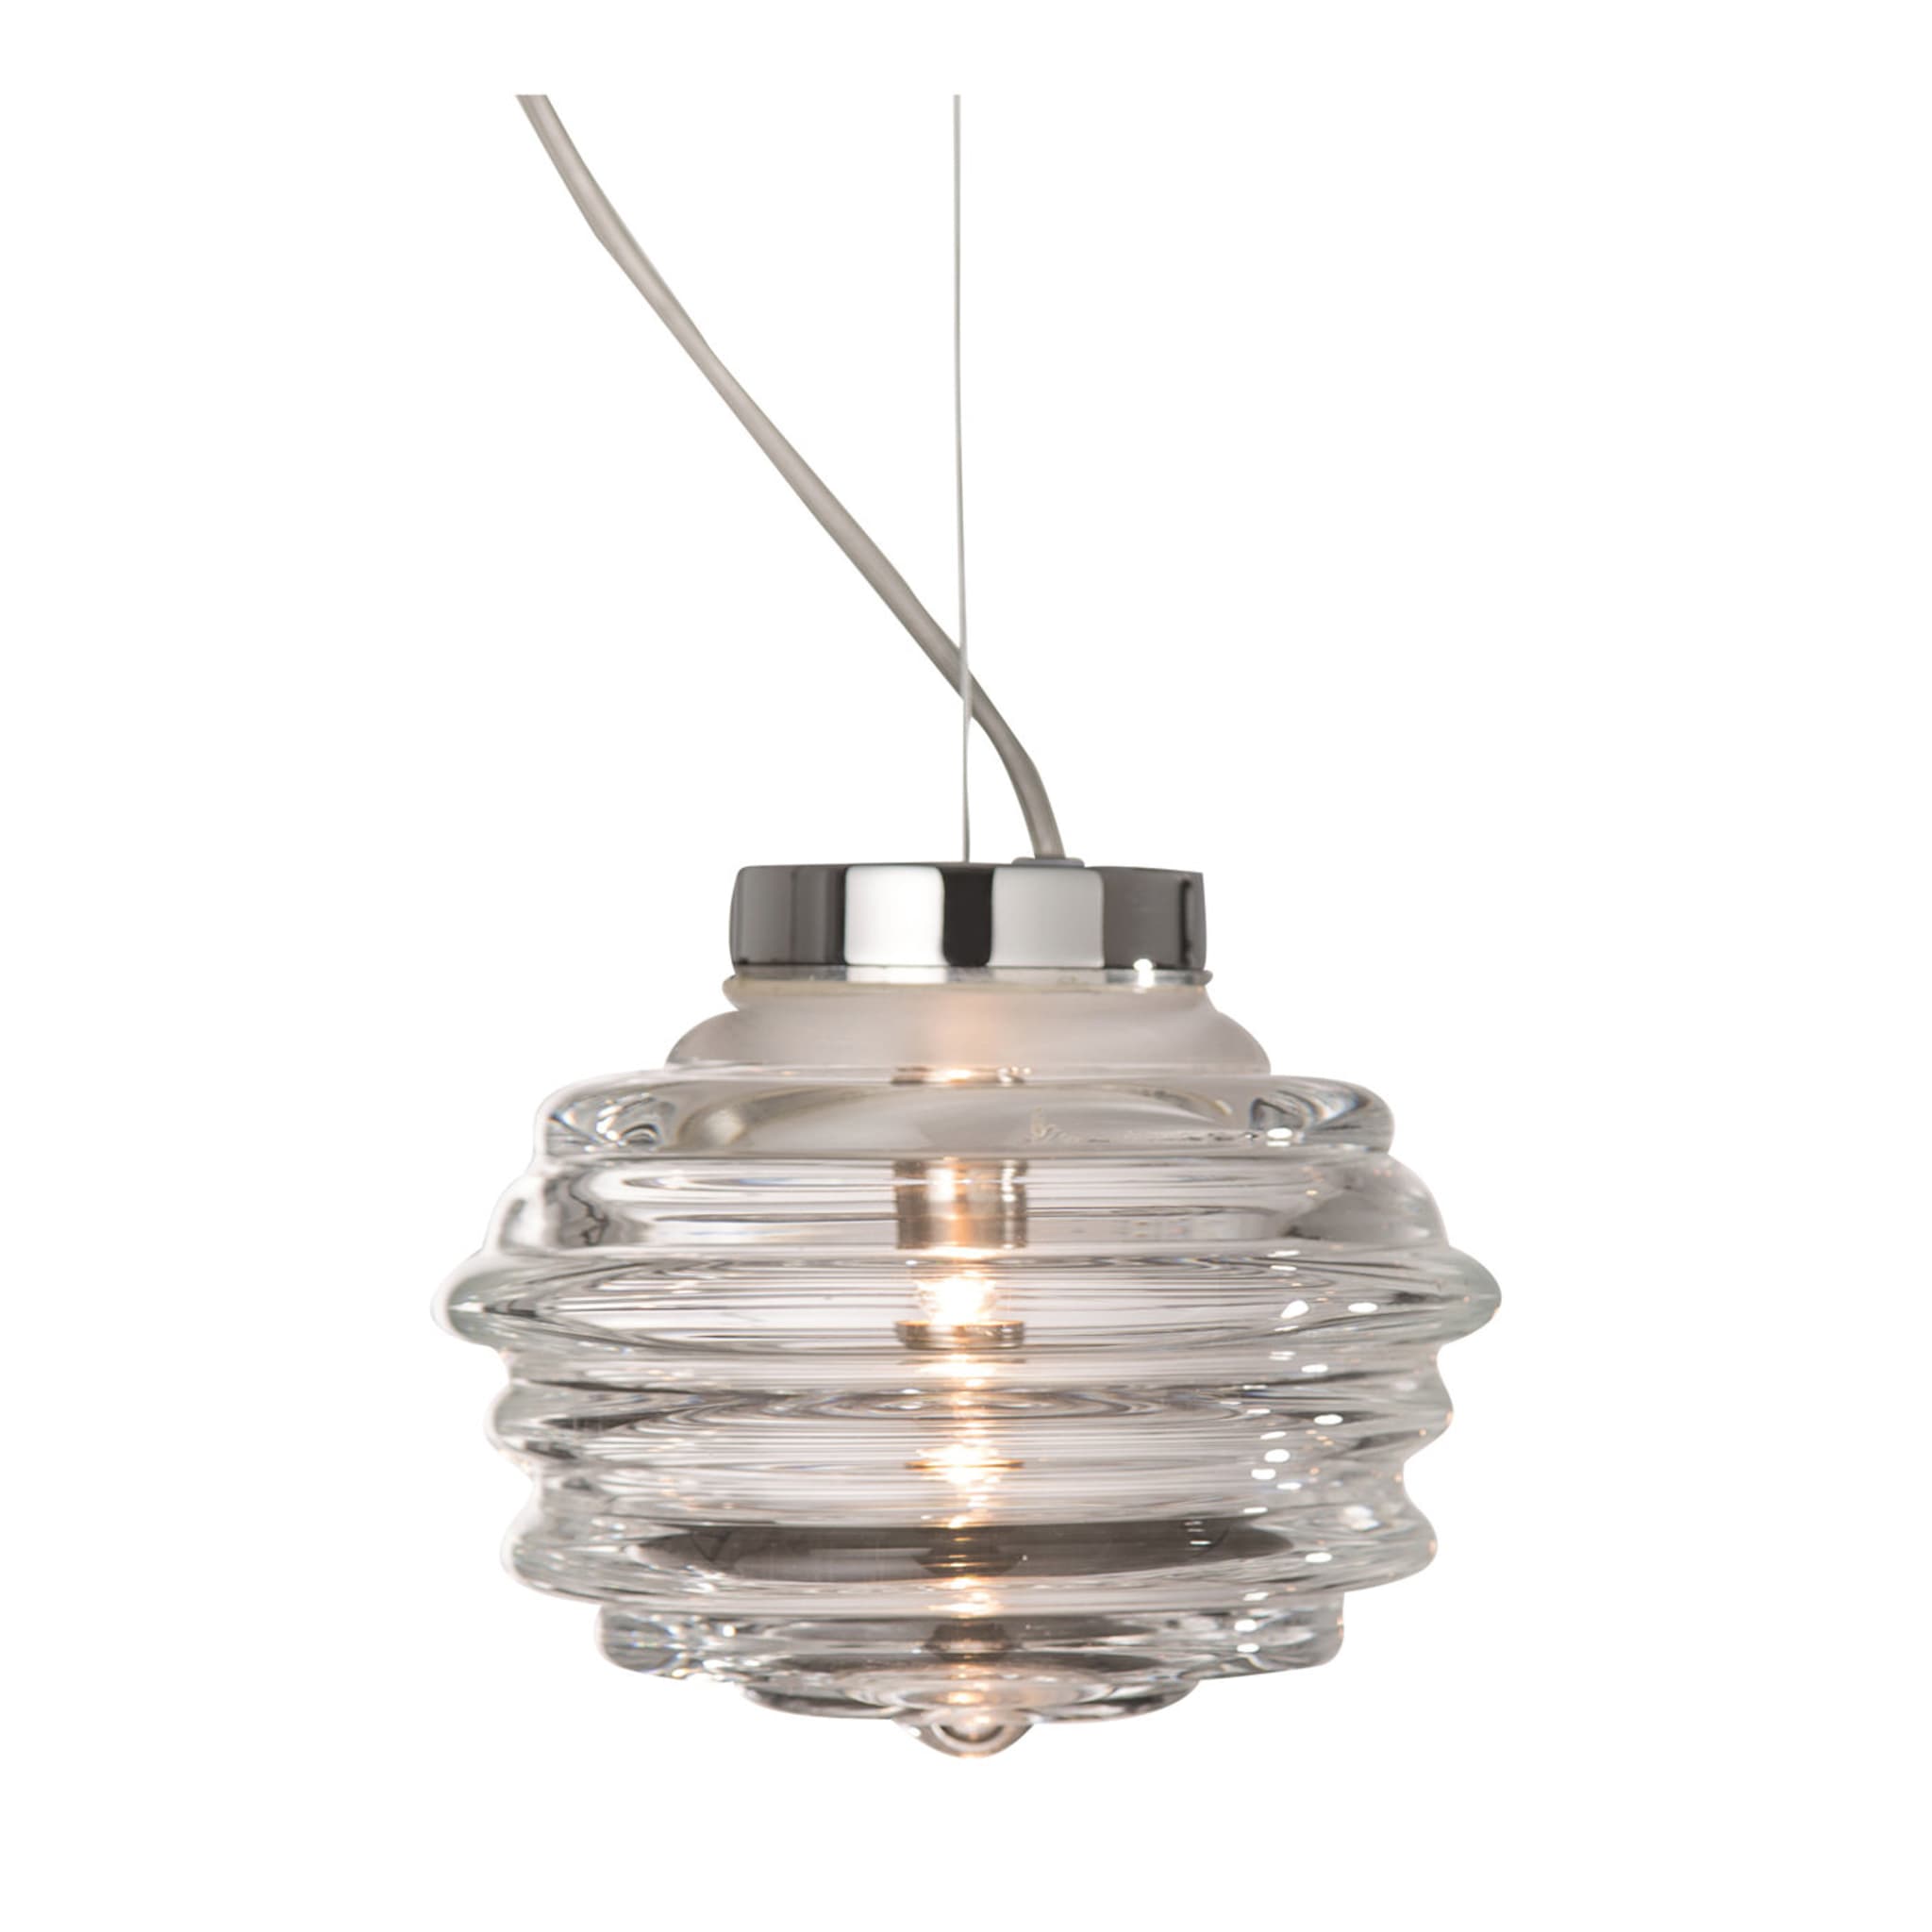 Onda Small Pendant Lamp by Giovanni Barbato - Main view